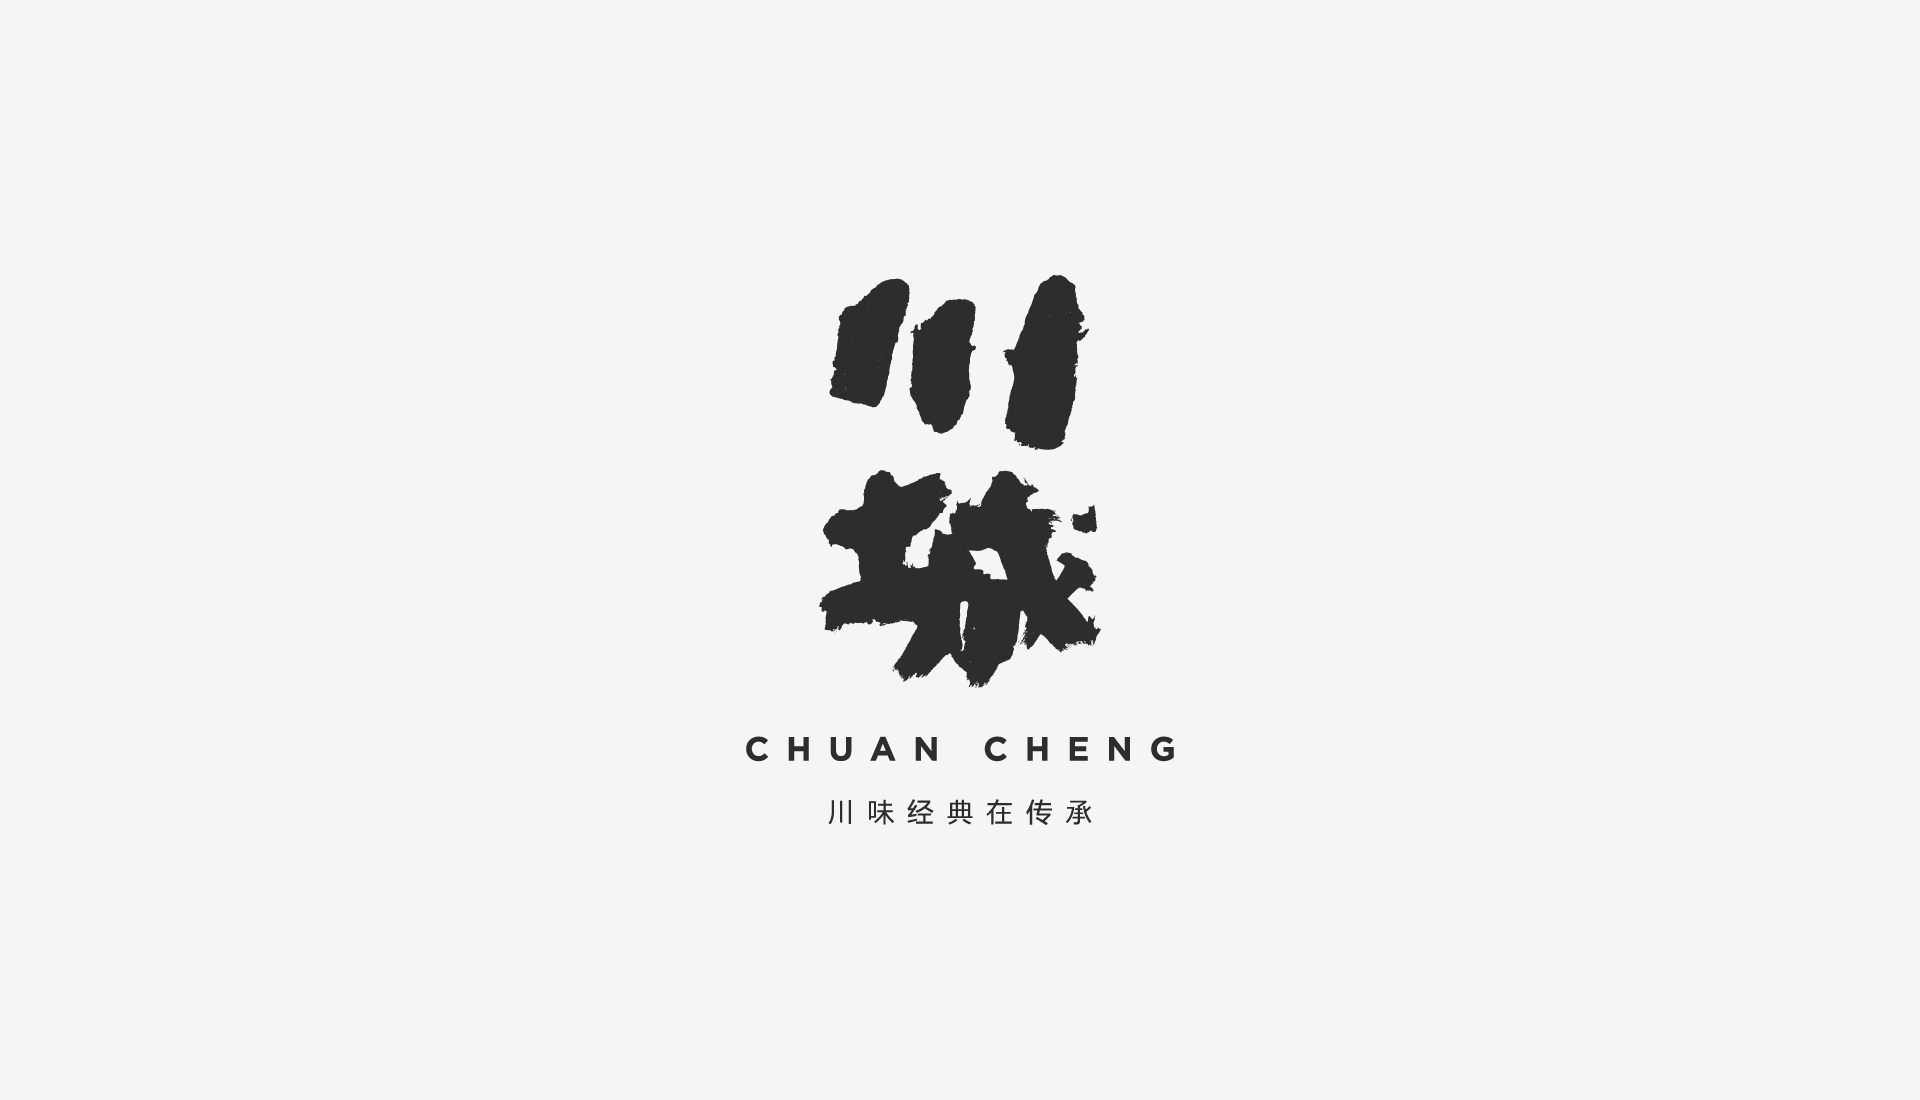 CHUAN CHENG